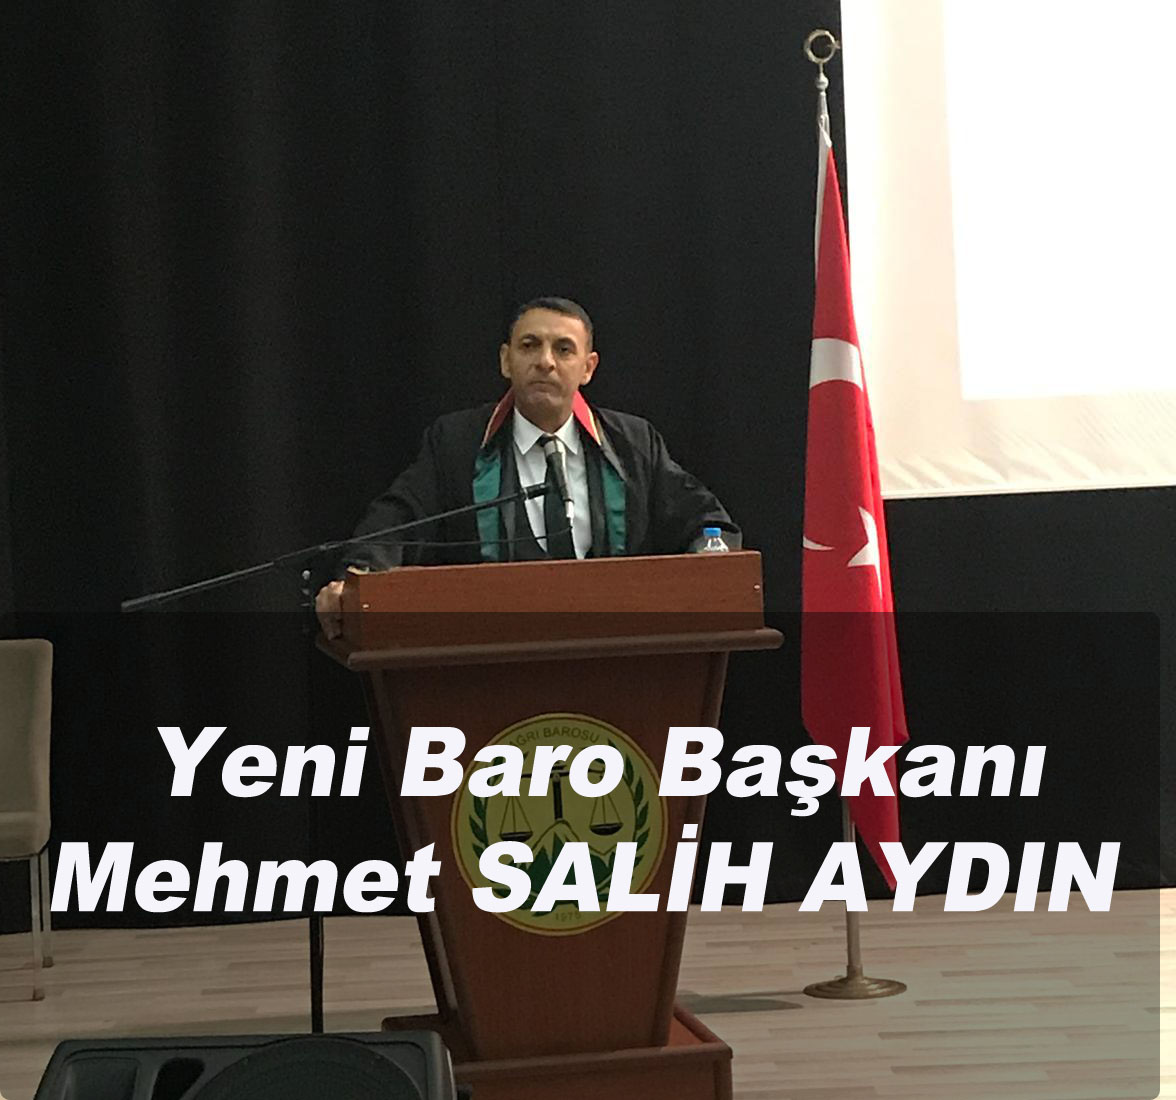  Avukat Mehmet Salih AYDIN Ağrı’nın Yeni Baro Başkanı